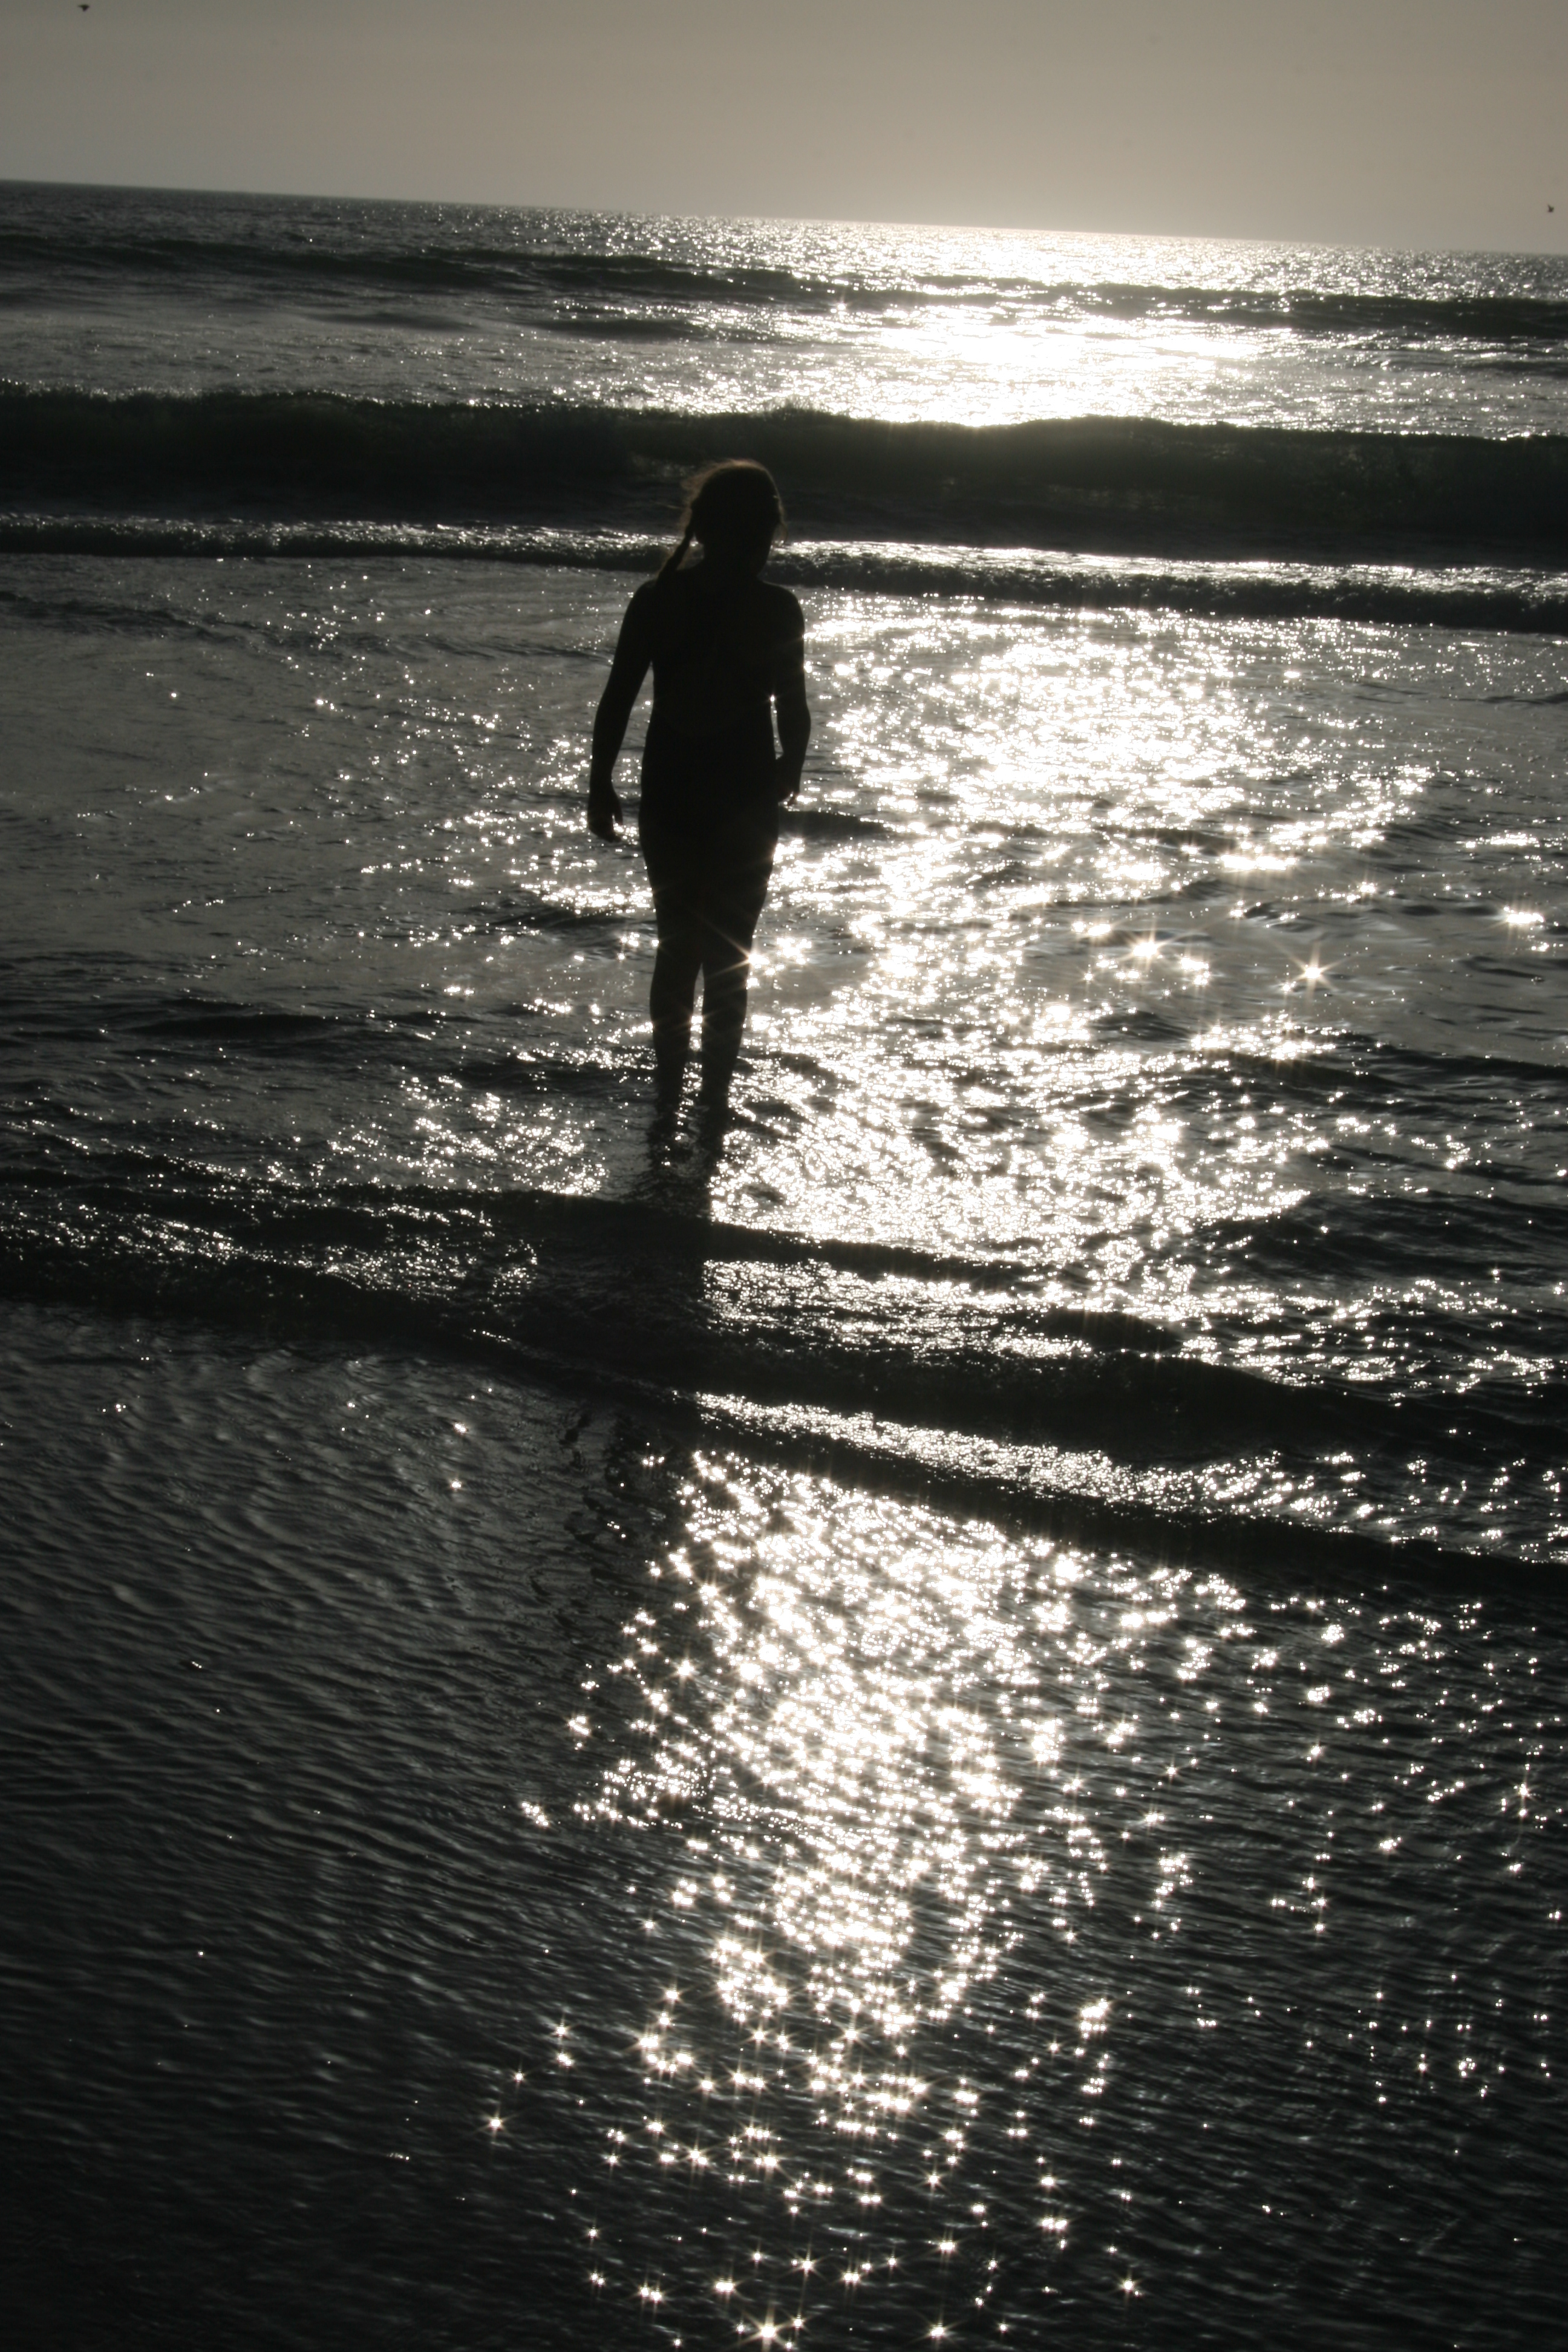 Sunset beach, Beach, Child, Person, Sea, HQ Photo